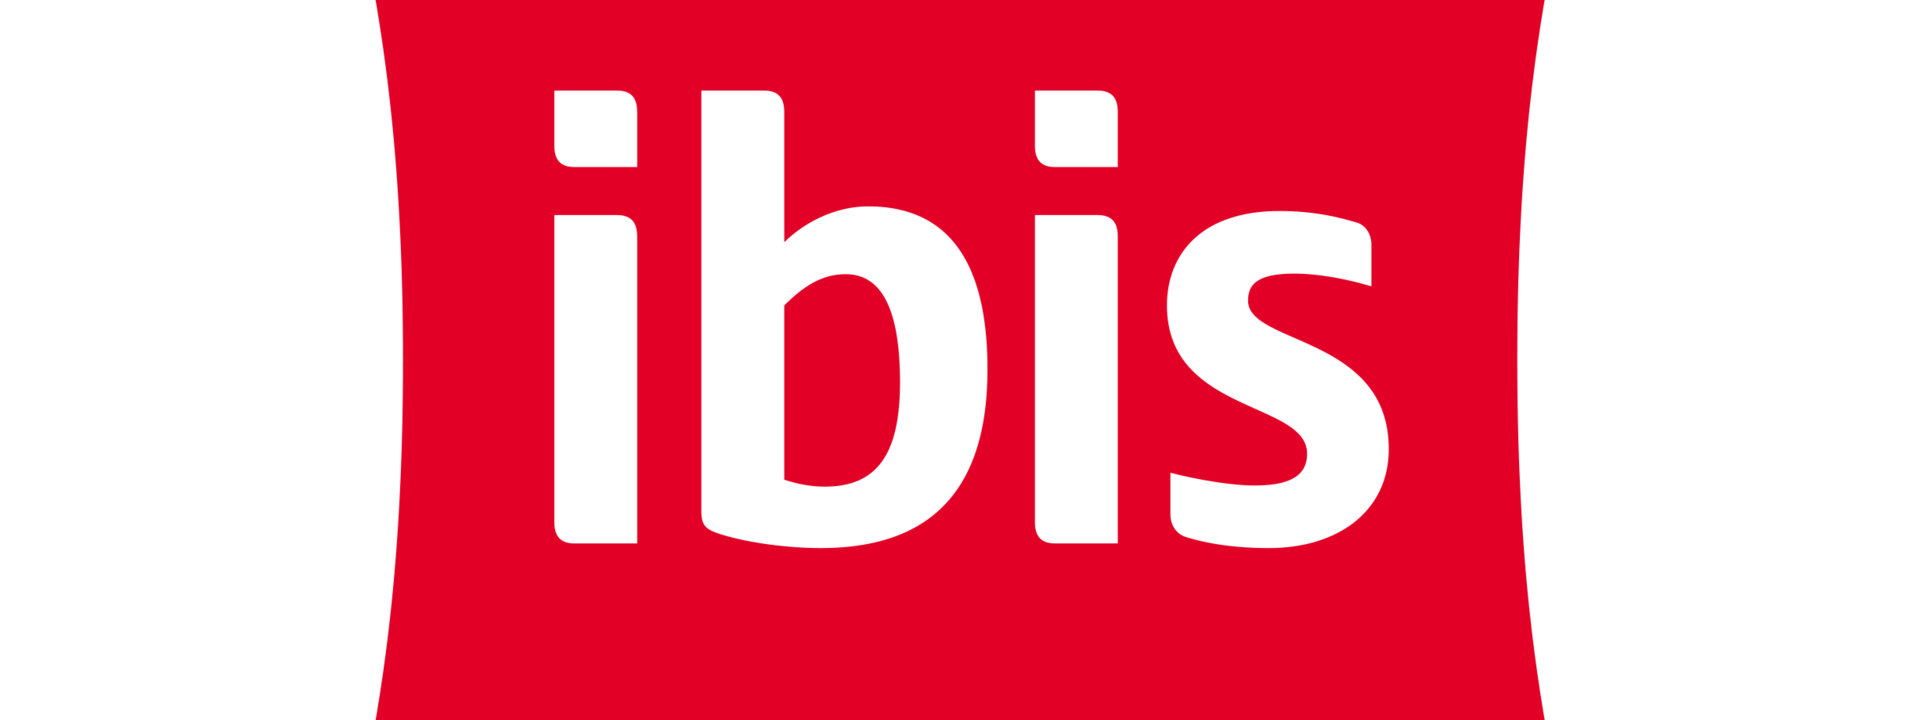 logo_ibis_rgb_1.png